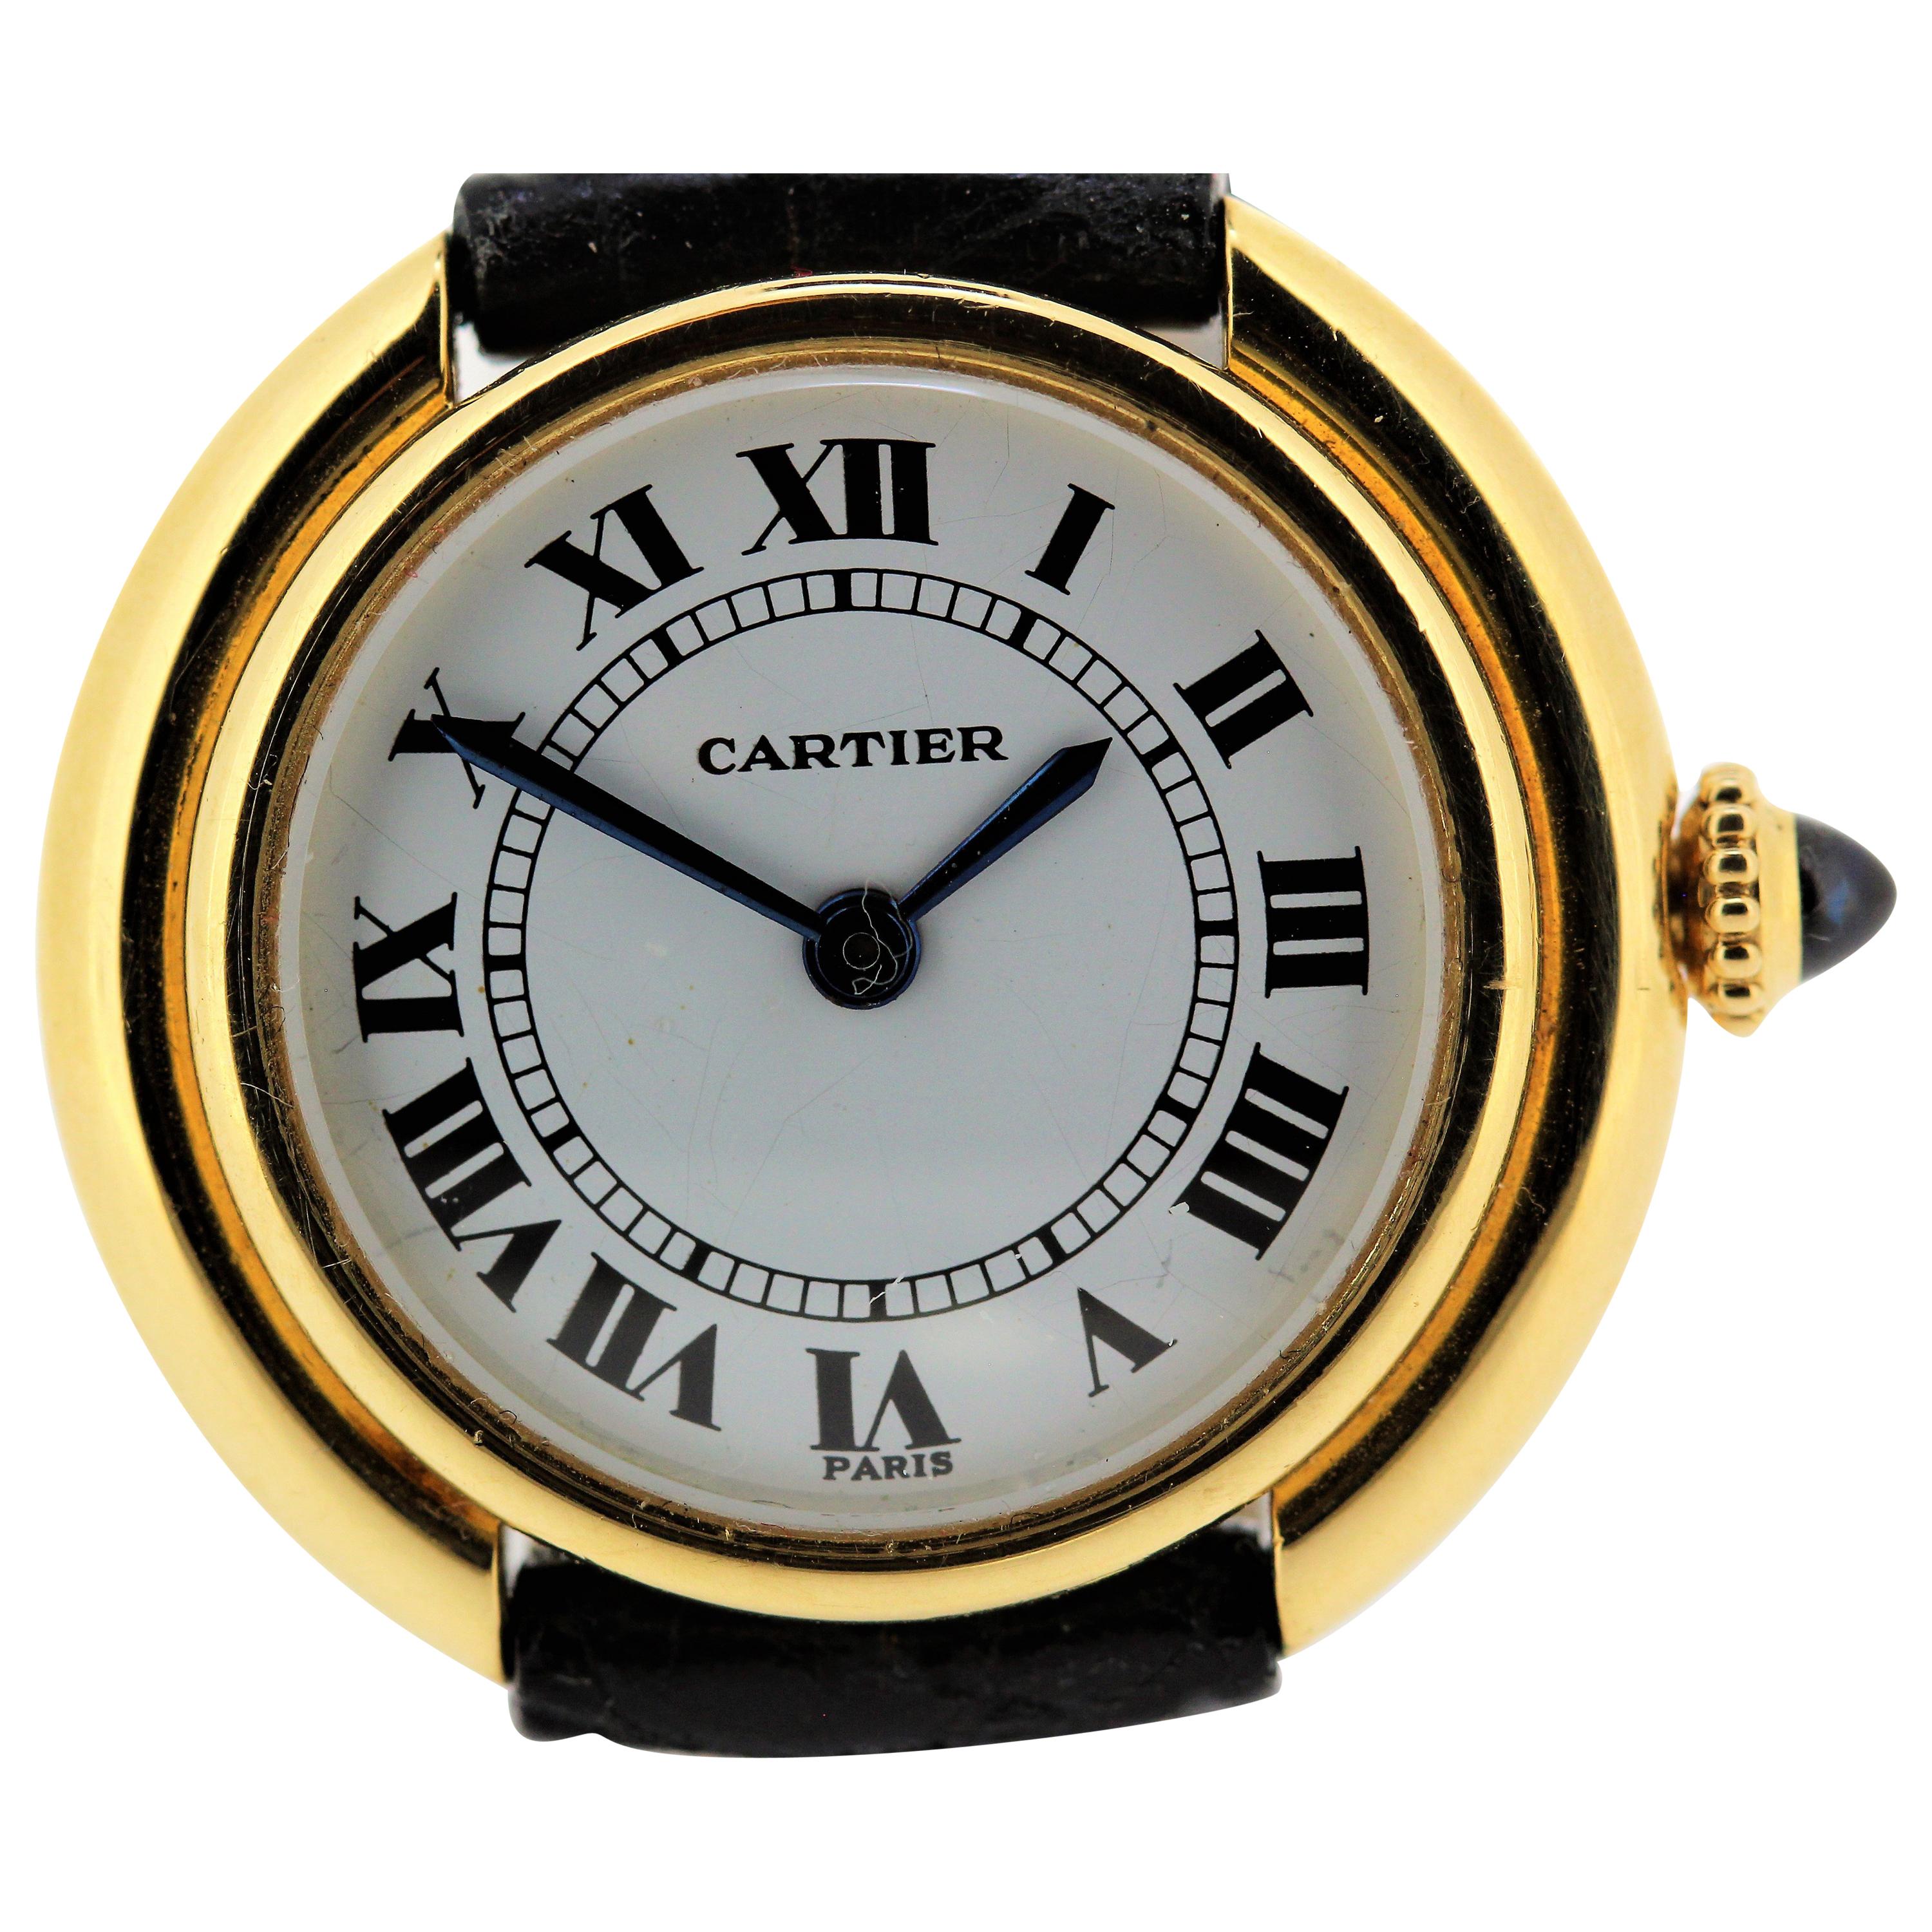 Petite montre vintage Vendome à remontage manuel de Cartier Paris. Choix du noir ou du romain 